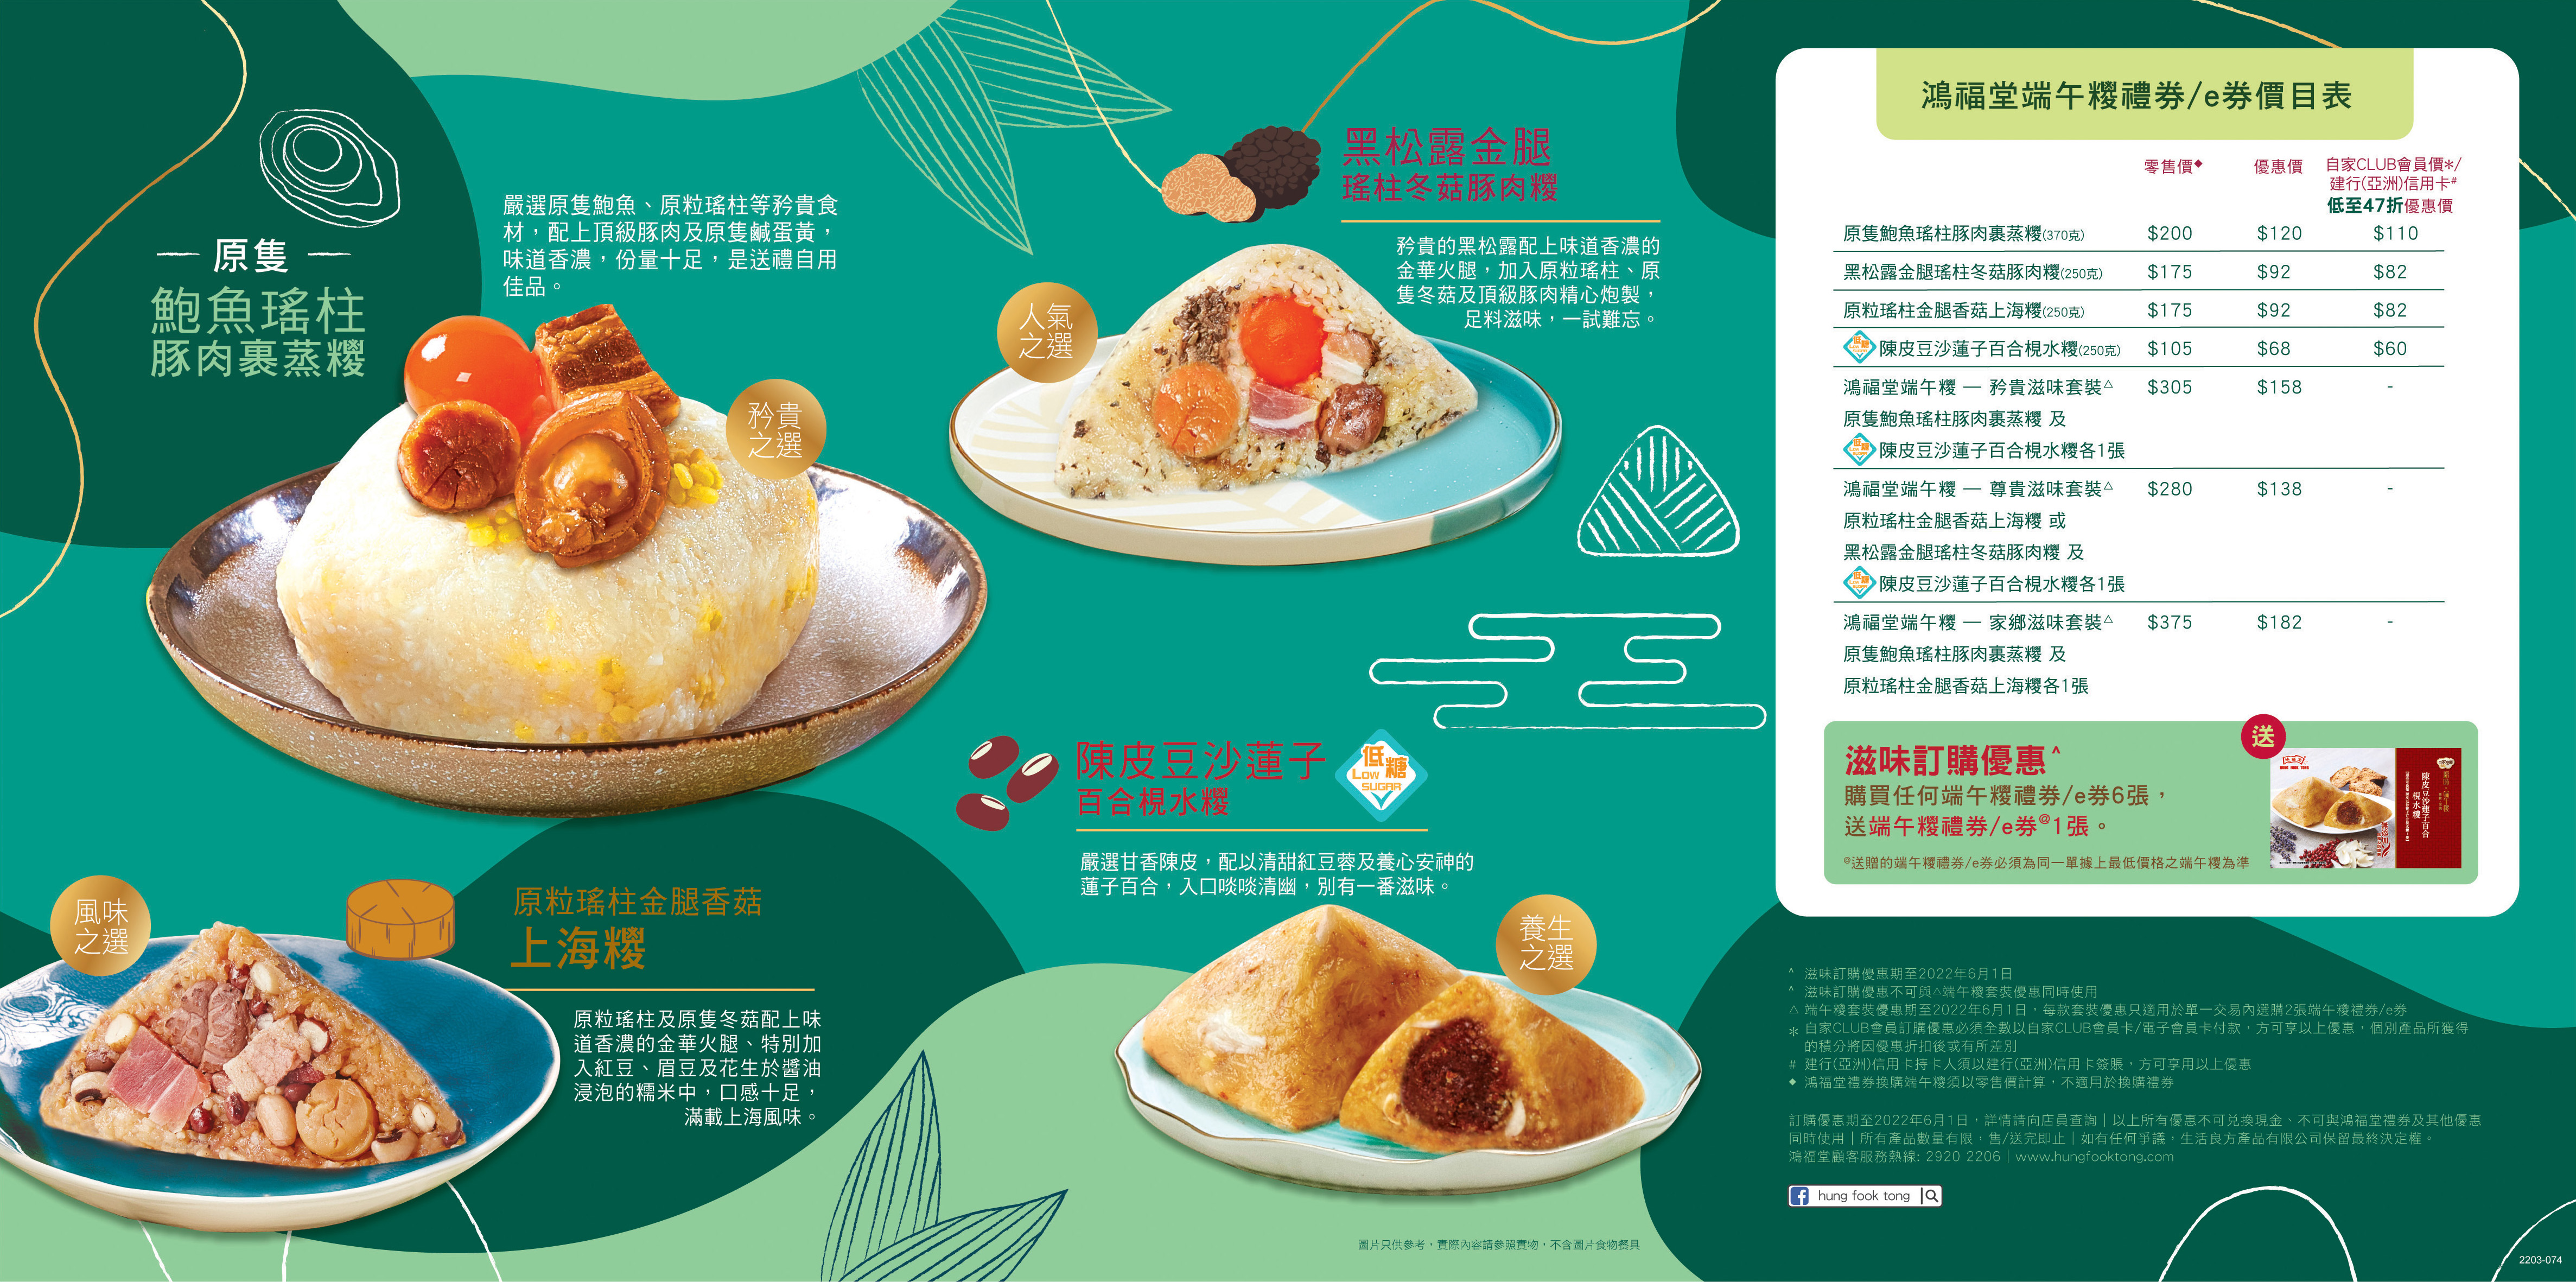 2203 074 dumpling leaflet2